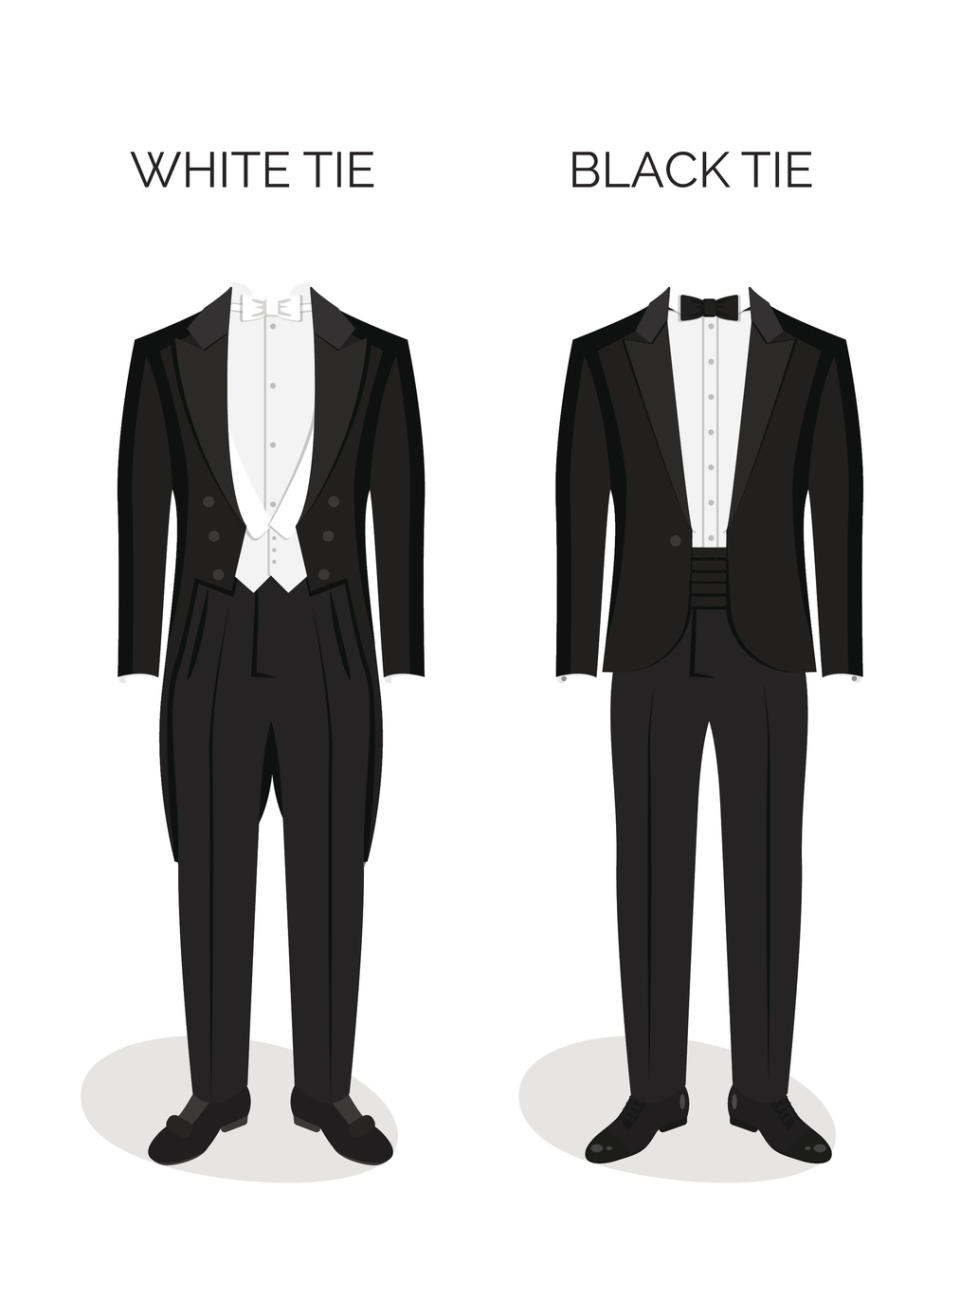 <p>„White Tie“ ist die höchste Stufe der Kleiderordnung: Männer tragen dafür eine weiße Fliege, einen schwarzen Mantel mit Gehrock und eine weiße Weste über einem weißen Anzugshemd. Damen müssen formelle Abendkleider und Handschuhe tragen. Derart pompöse Abendkleider sieht man bei Adelshochzeiten, Nobelpreisverleihungen oder dem Wiener Opernball. (Bild: Getty Images) </p>